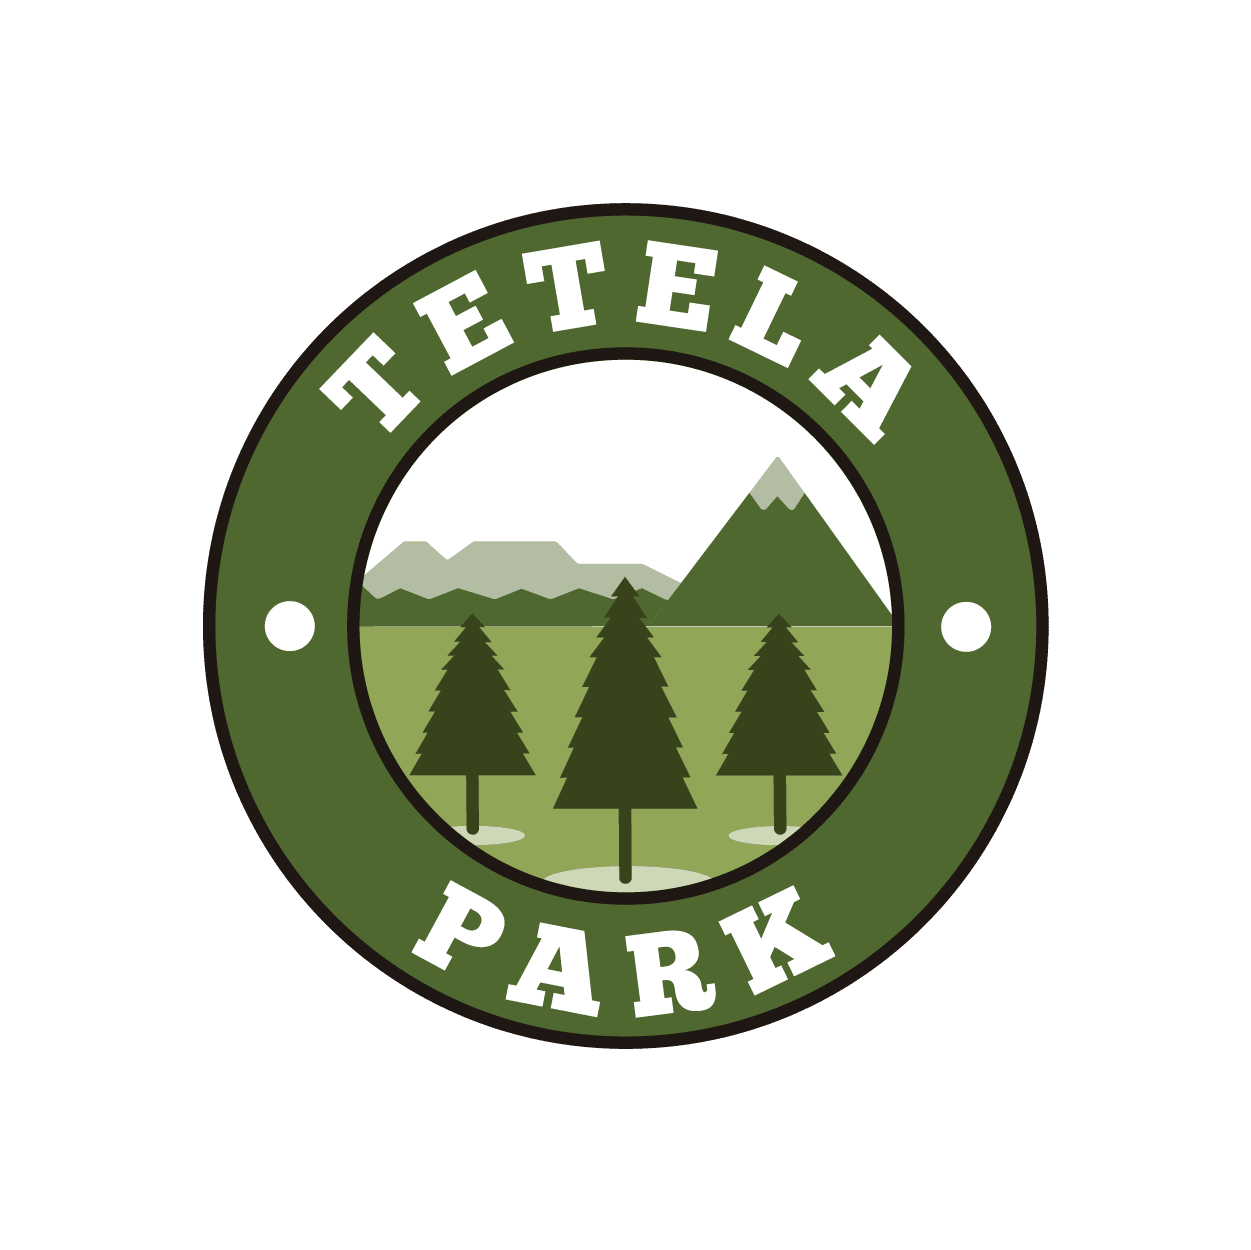 Tetela Park